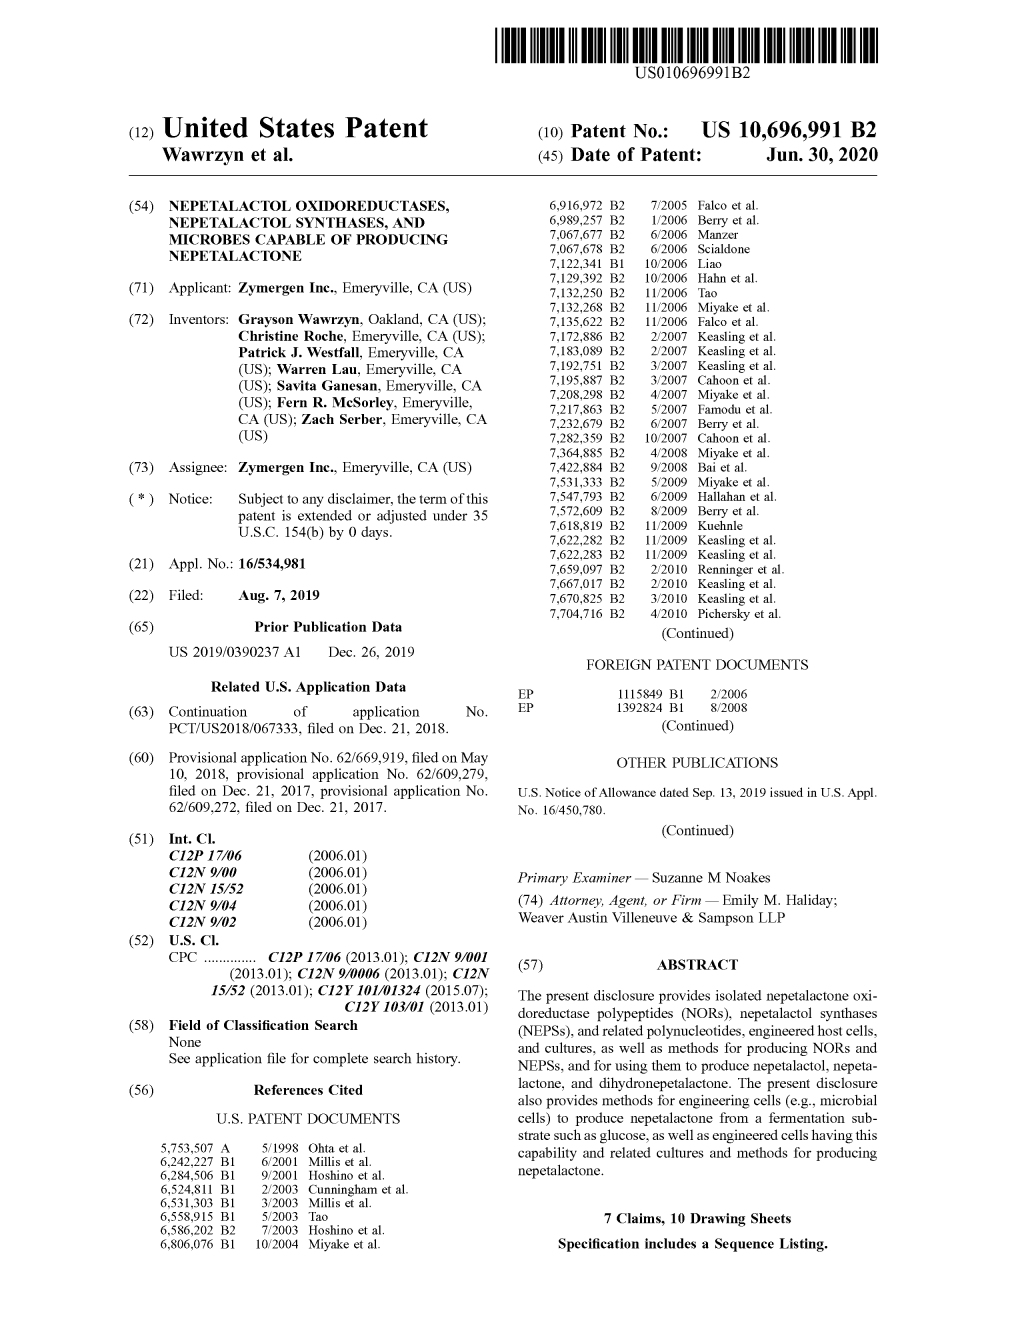 United States Patent ( 10 ) Patent No.: US 10,696,991 B2 Wawrzyn Et Al